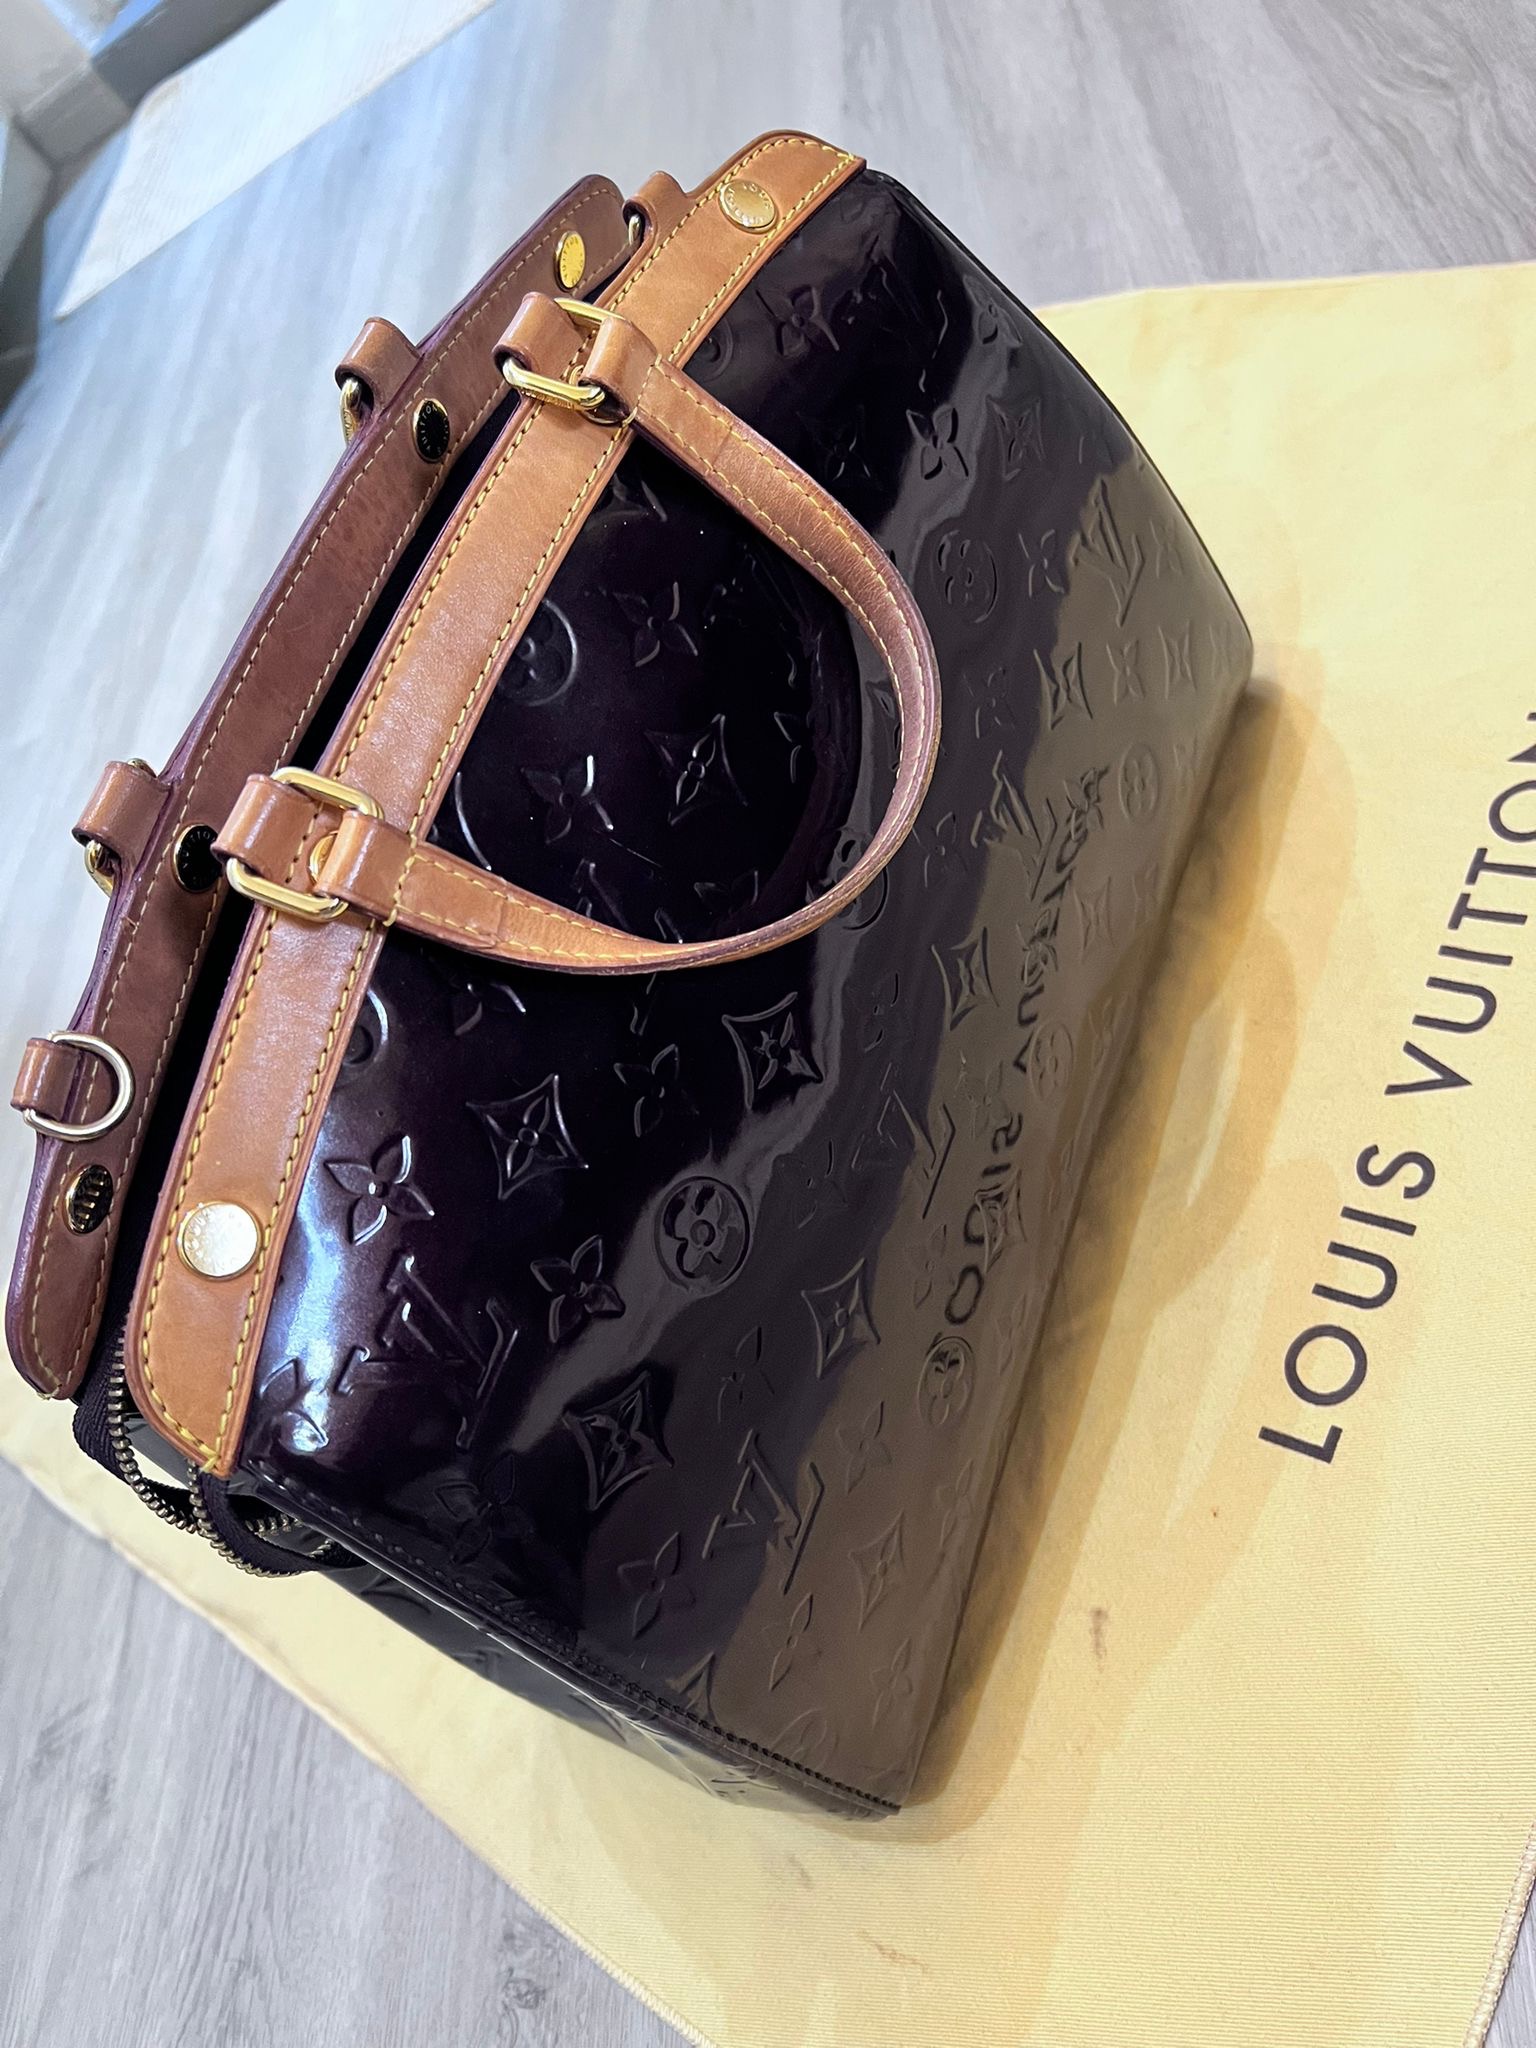 100% Authentic Louis Vuitton Brea MM VERNIS Burgundy shoulder bag